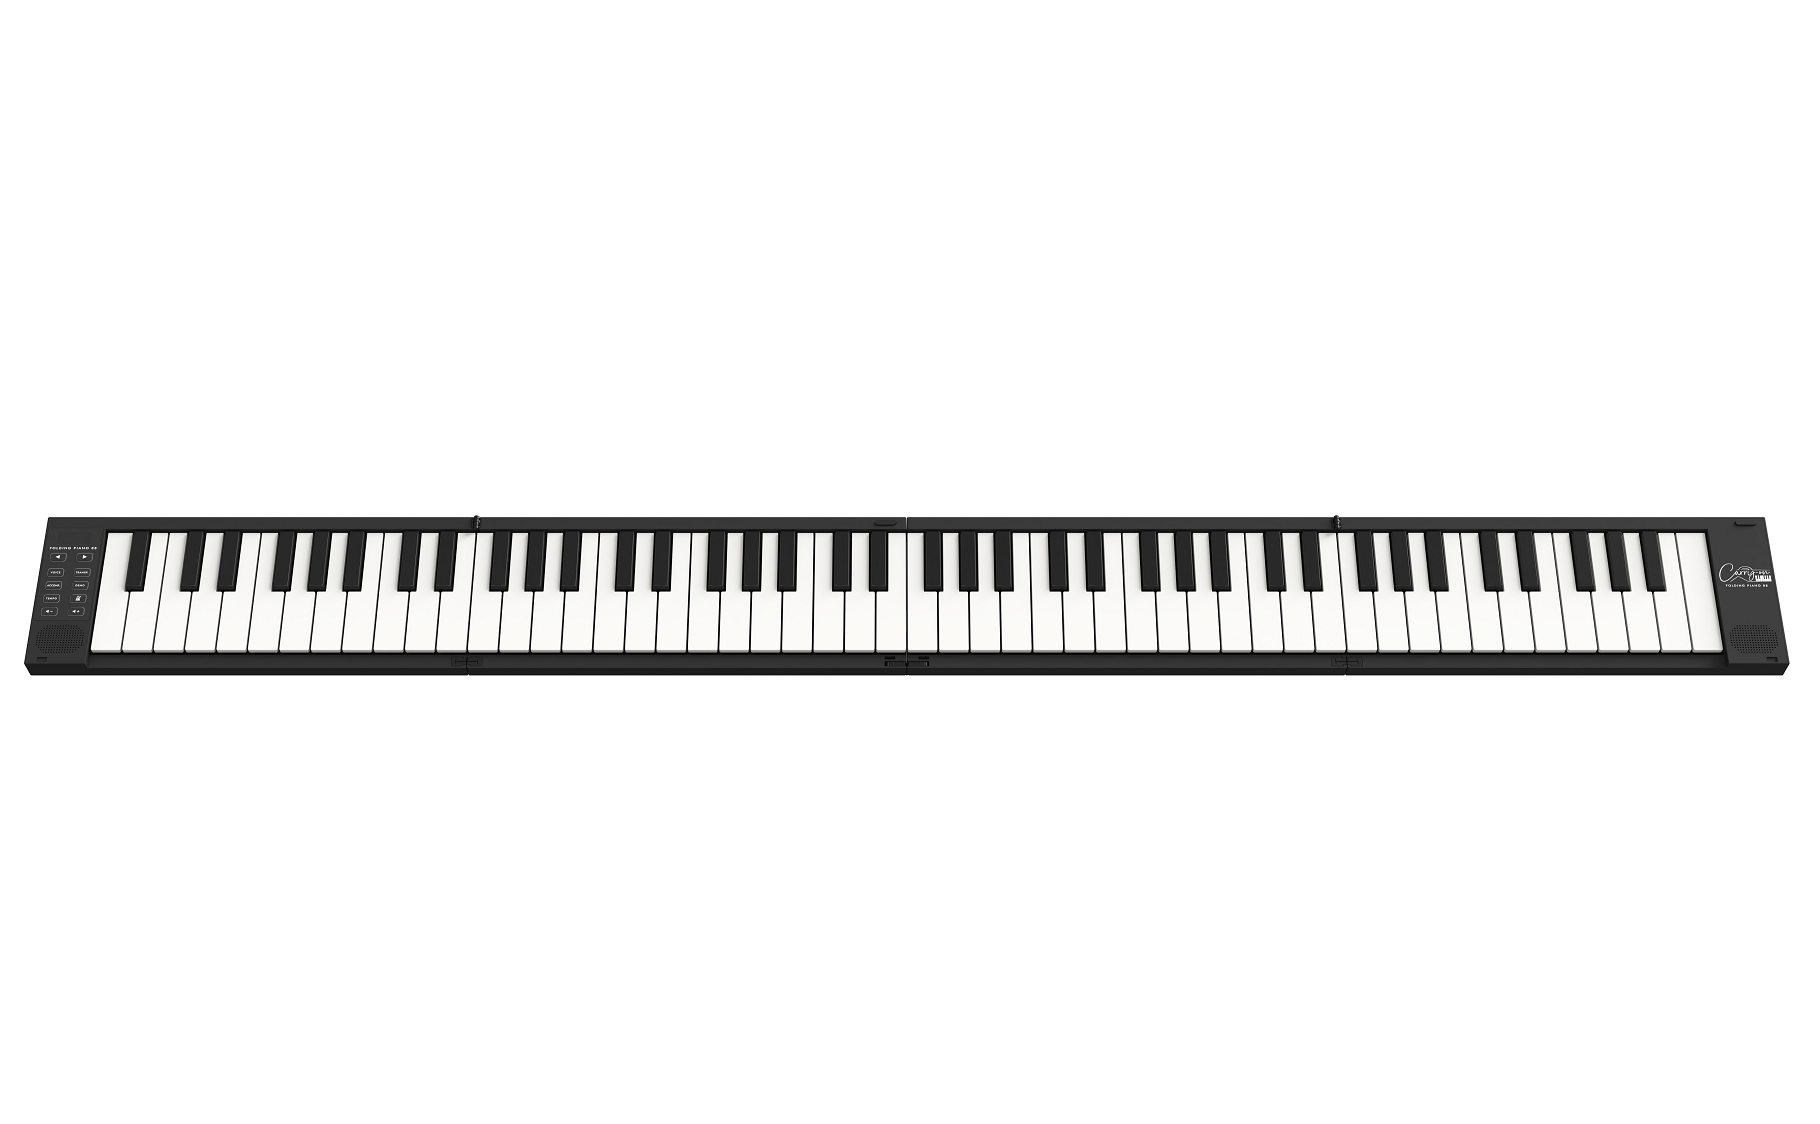 Carry-on 摺疊式88鍵數碼鍵琴 (黑色版)